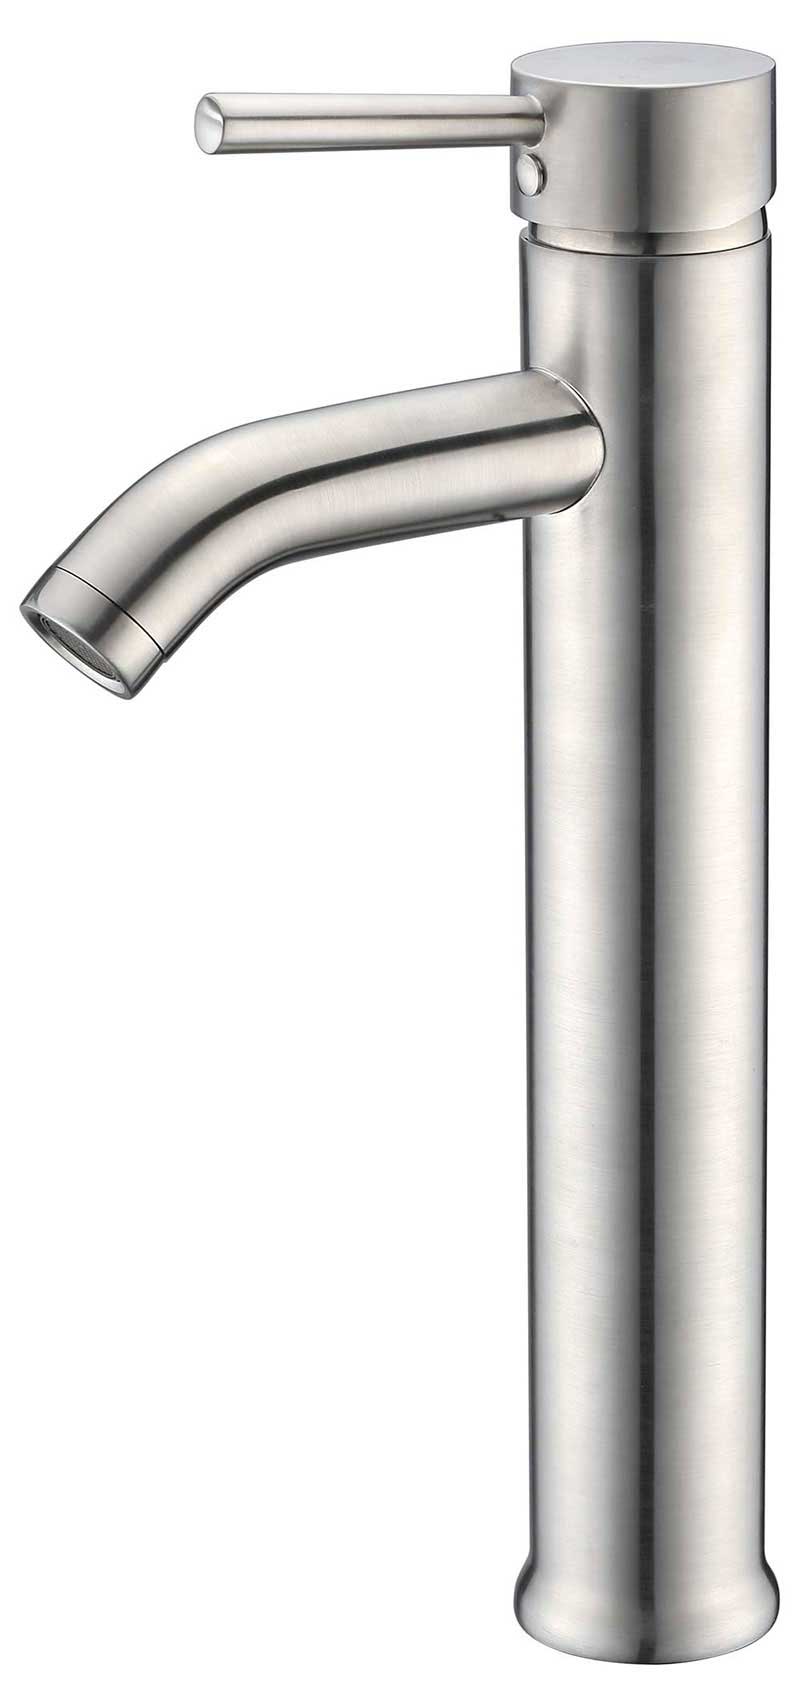 Anzzi Fann Single Handle Vessel Sink Faucet in Brushed Nickel 2